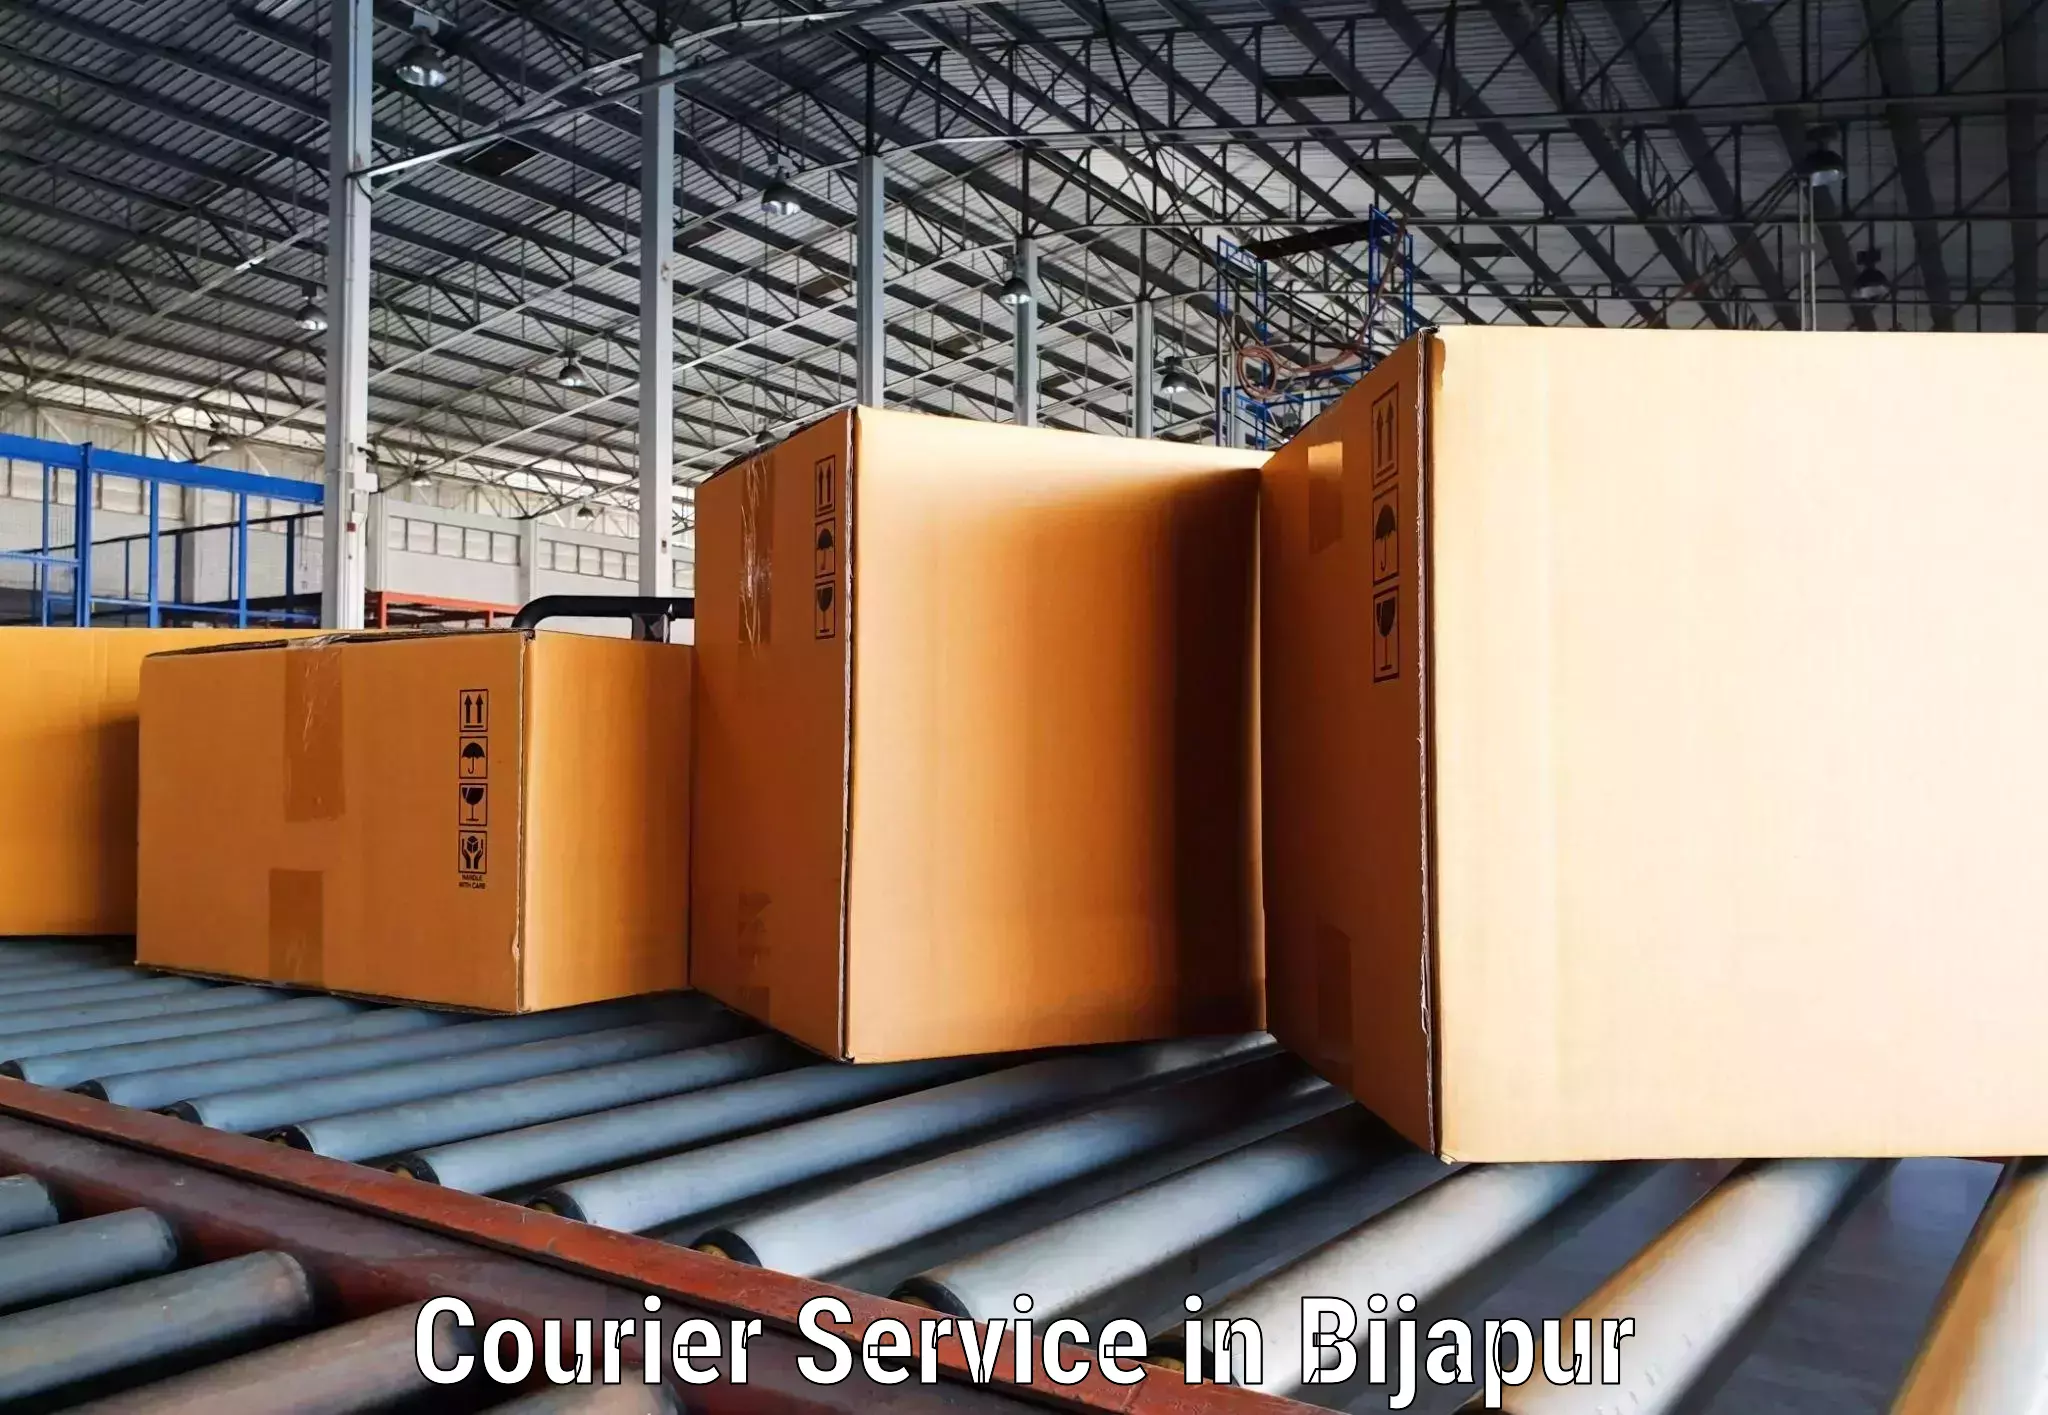 Advanced shipping logistics in Bijapur